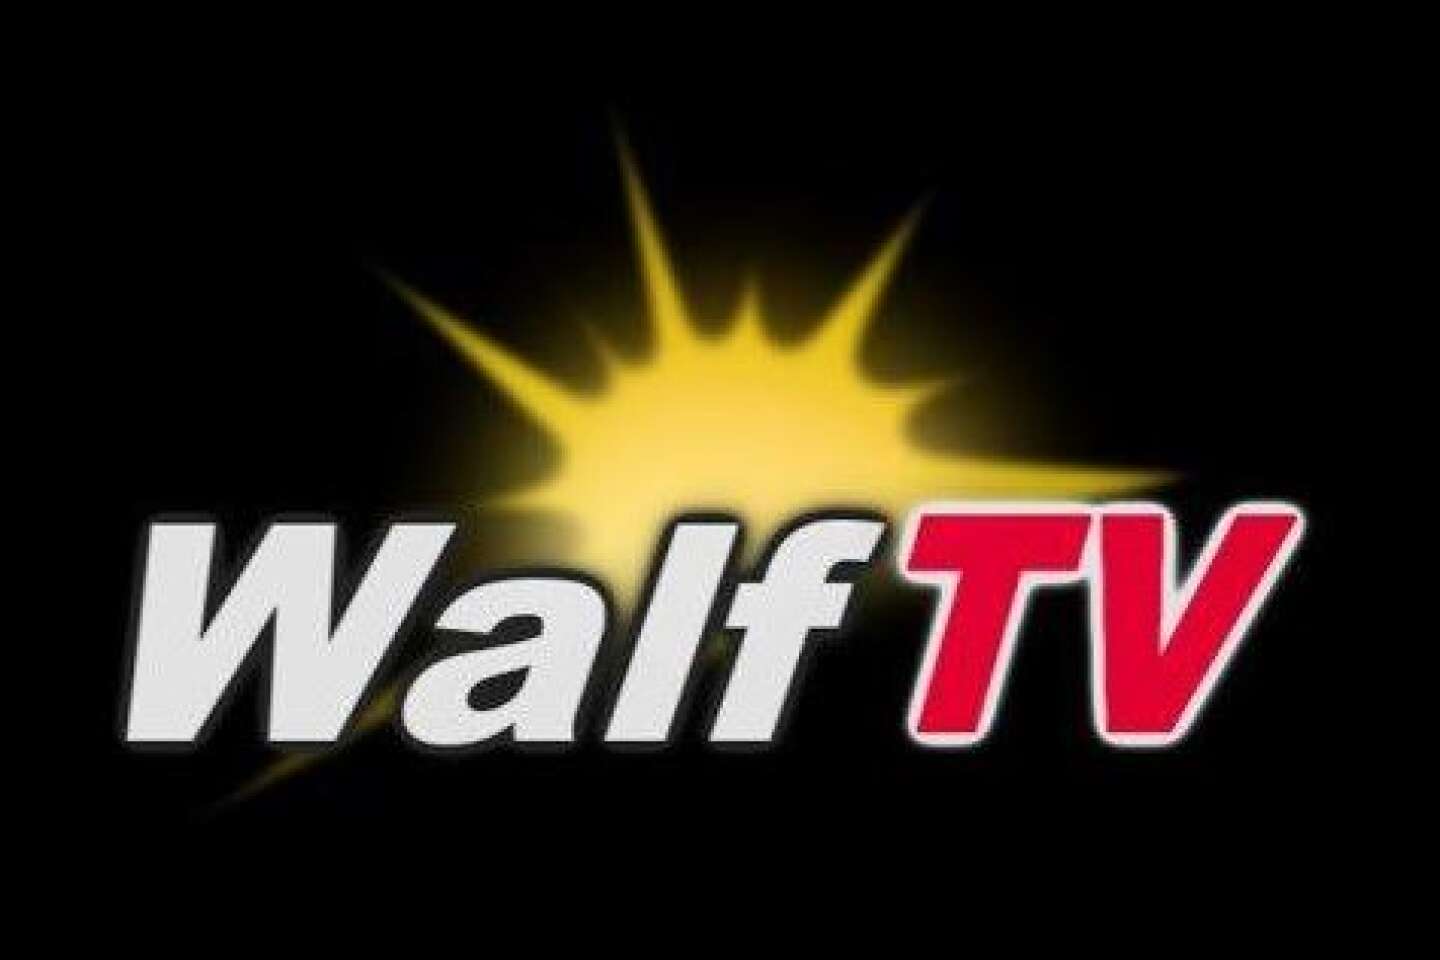 Walf TV : Les studios du 4e étage ravagés par un incendie